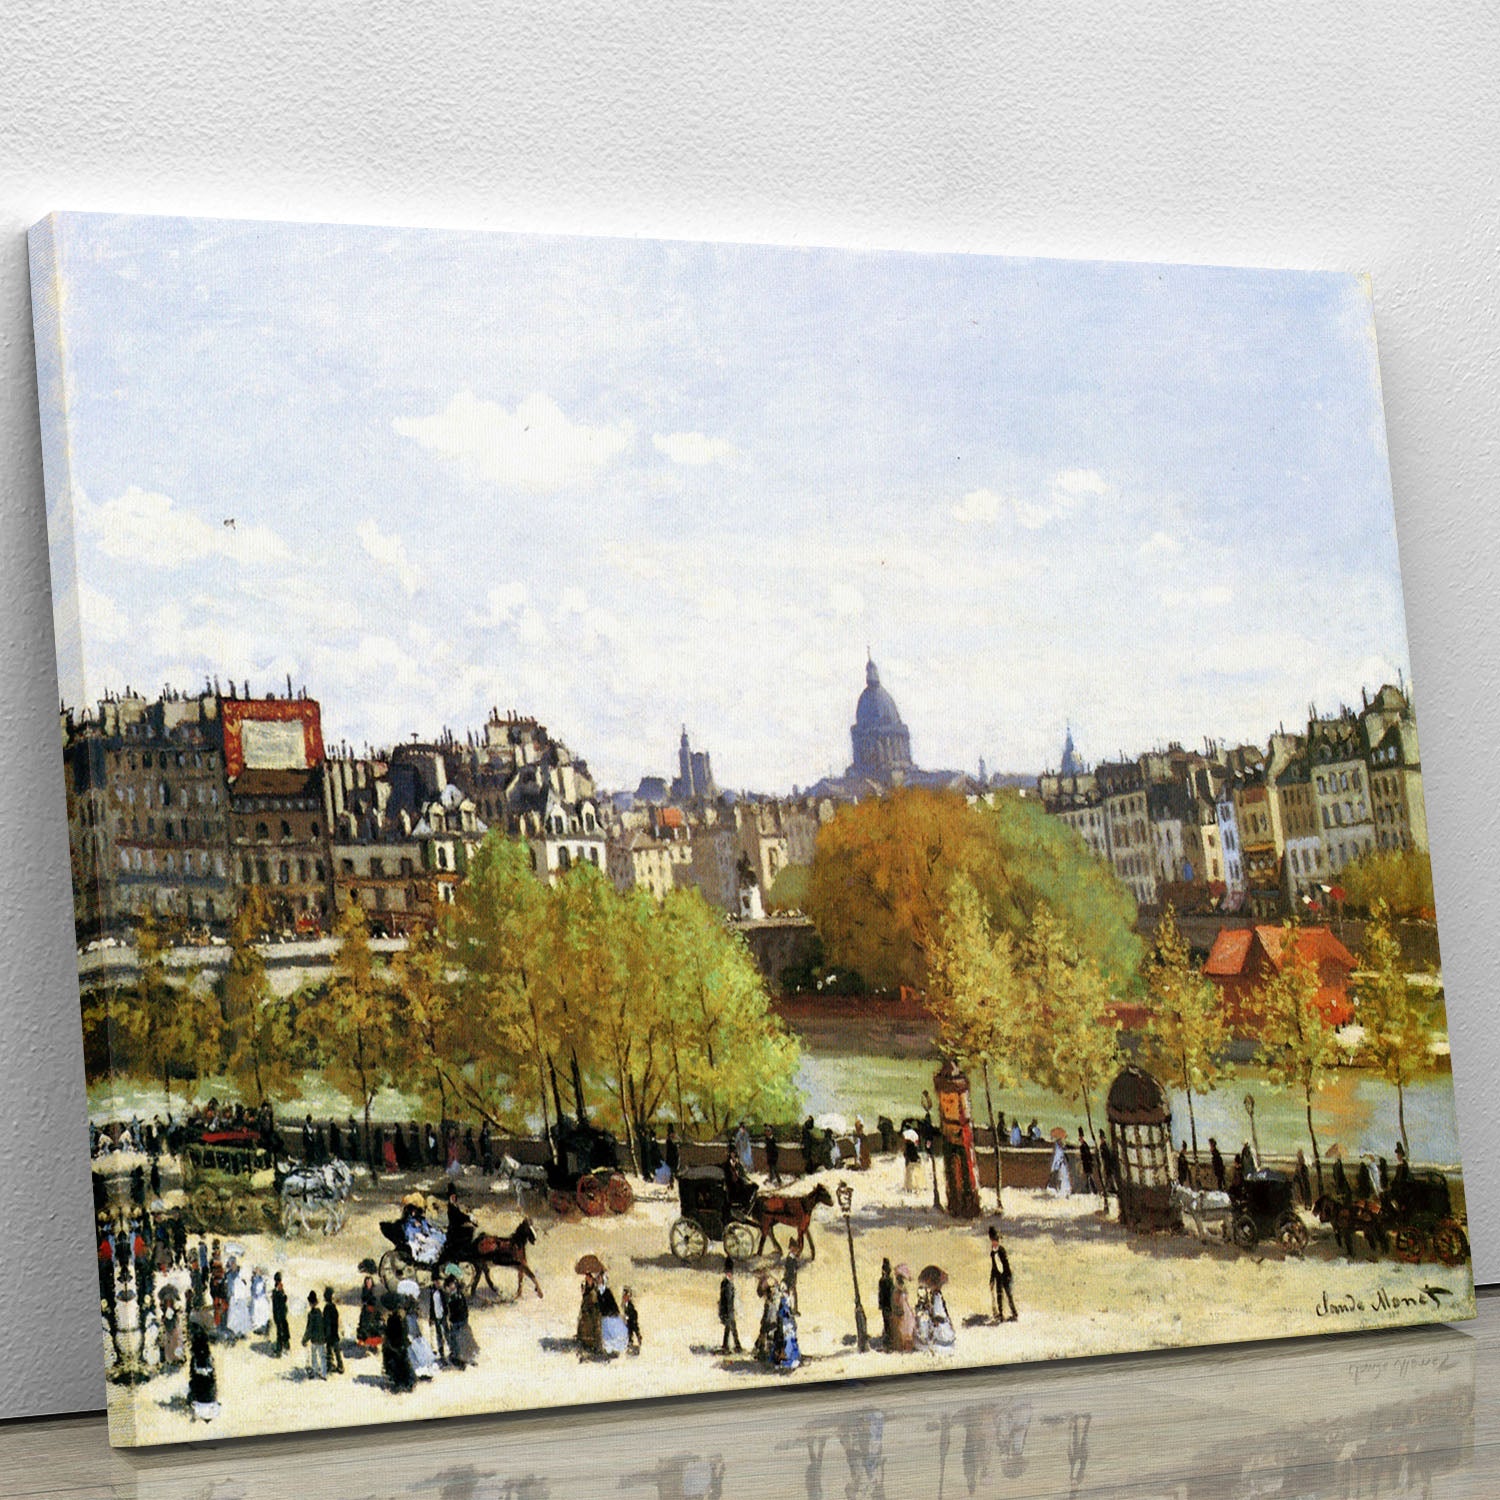 Le quai du Louvre by Monet Canvas Print or Poster - Canvas Art Rocks - 1